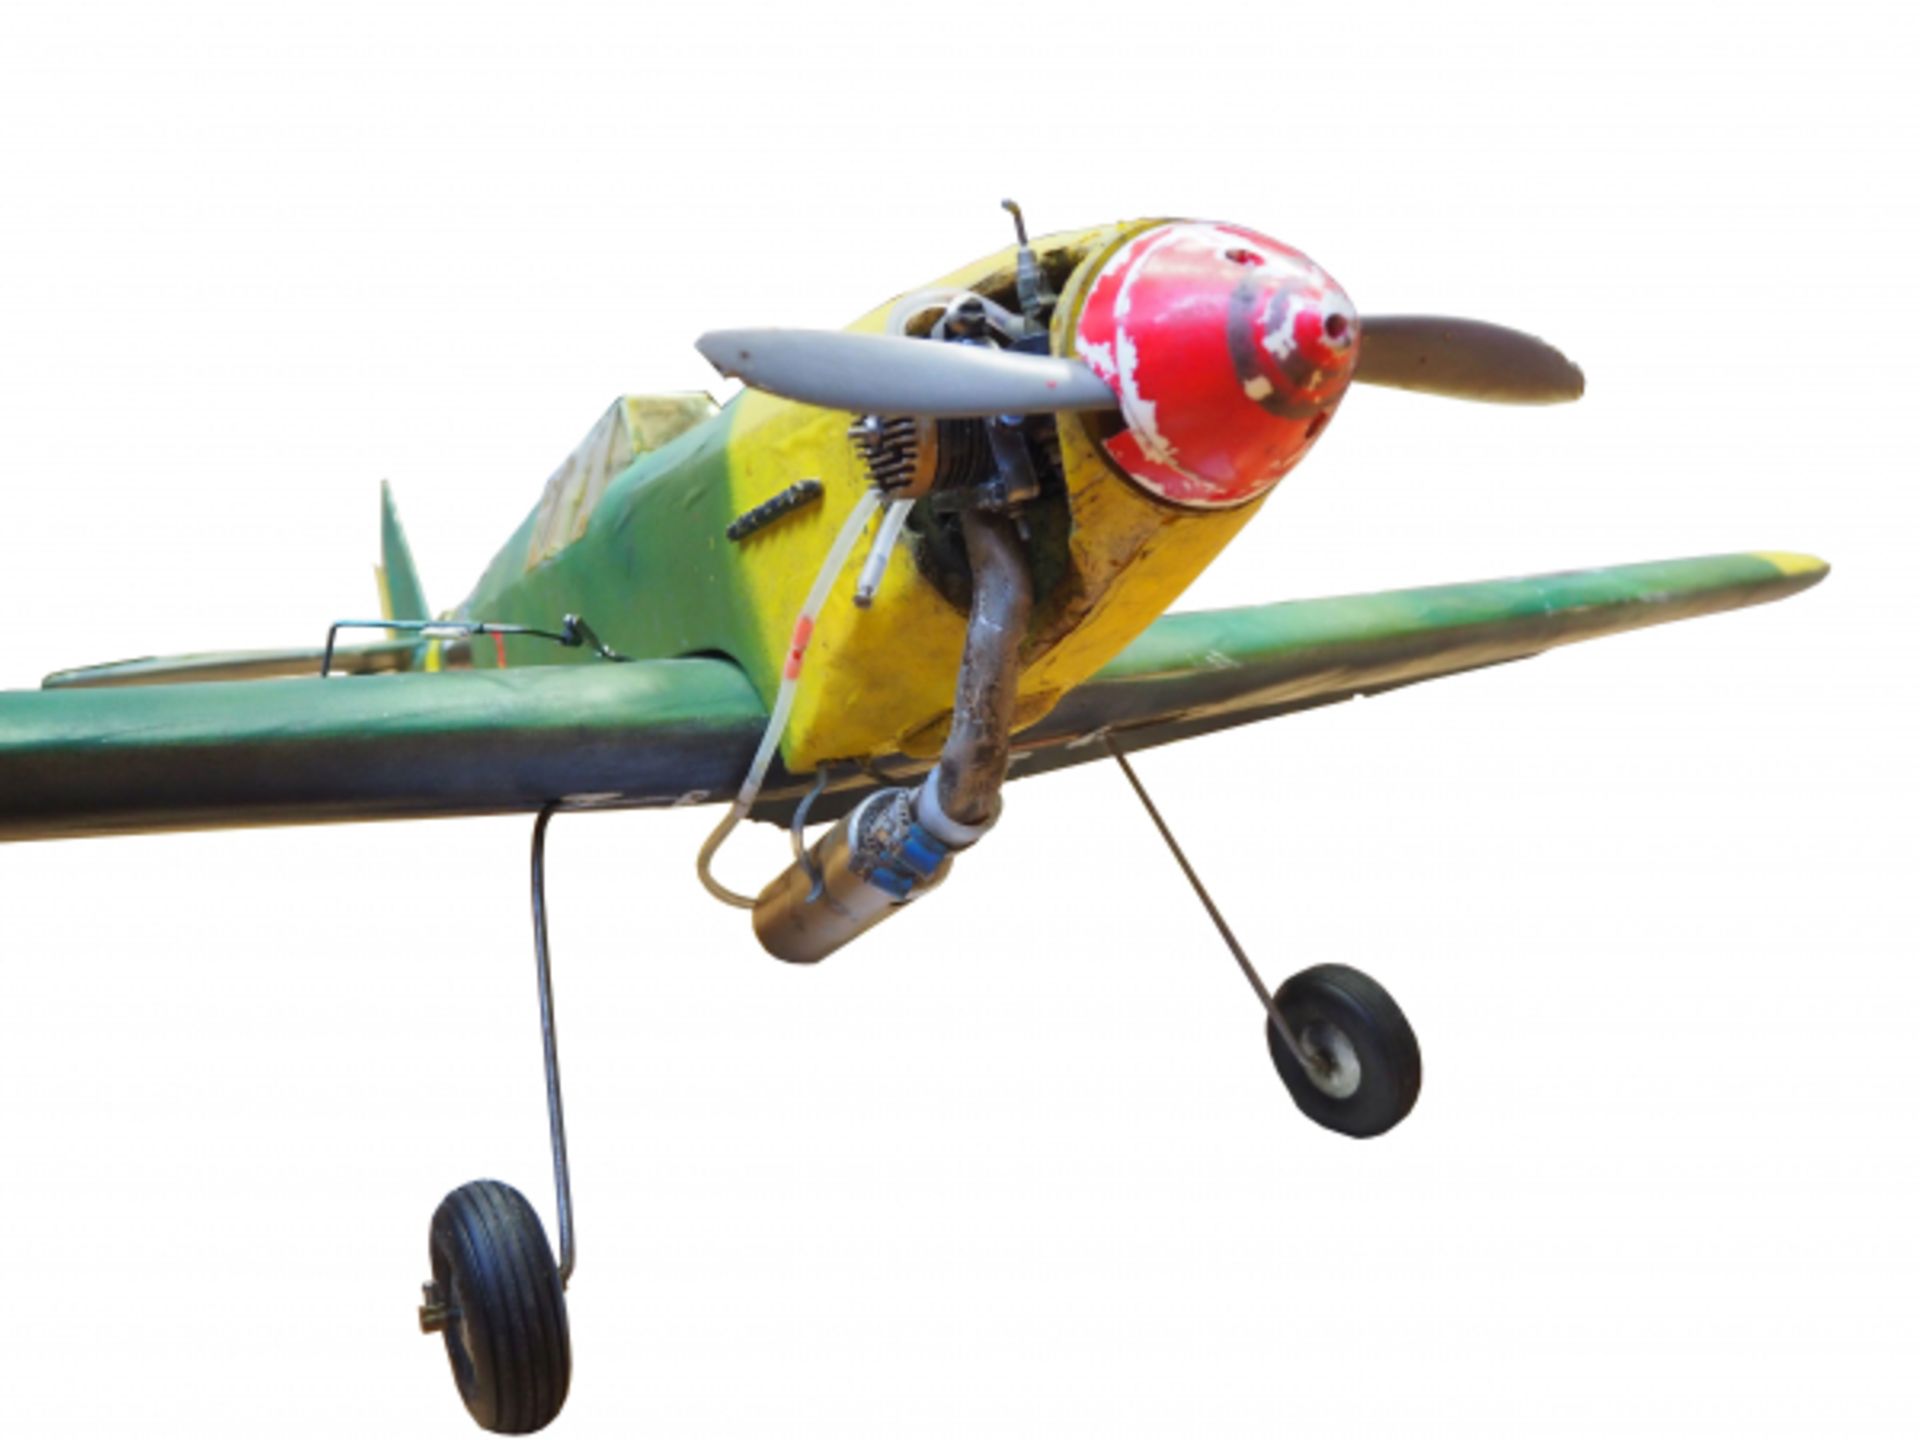 Messerschmit Bf 109 - Modell.Holz, Metall und Kunststoff, mit Verbrennungsmotor, bespielt. - Bild 2 aus 2